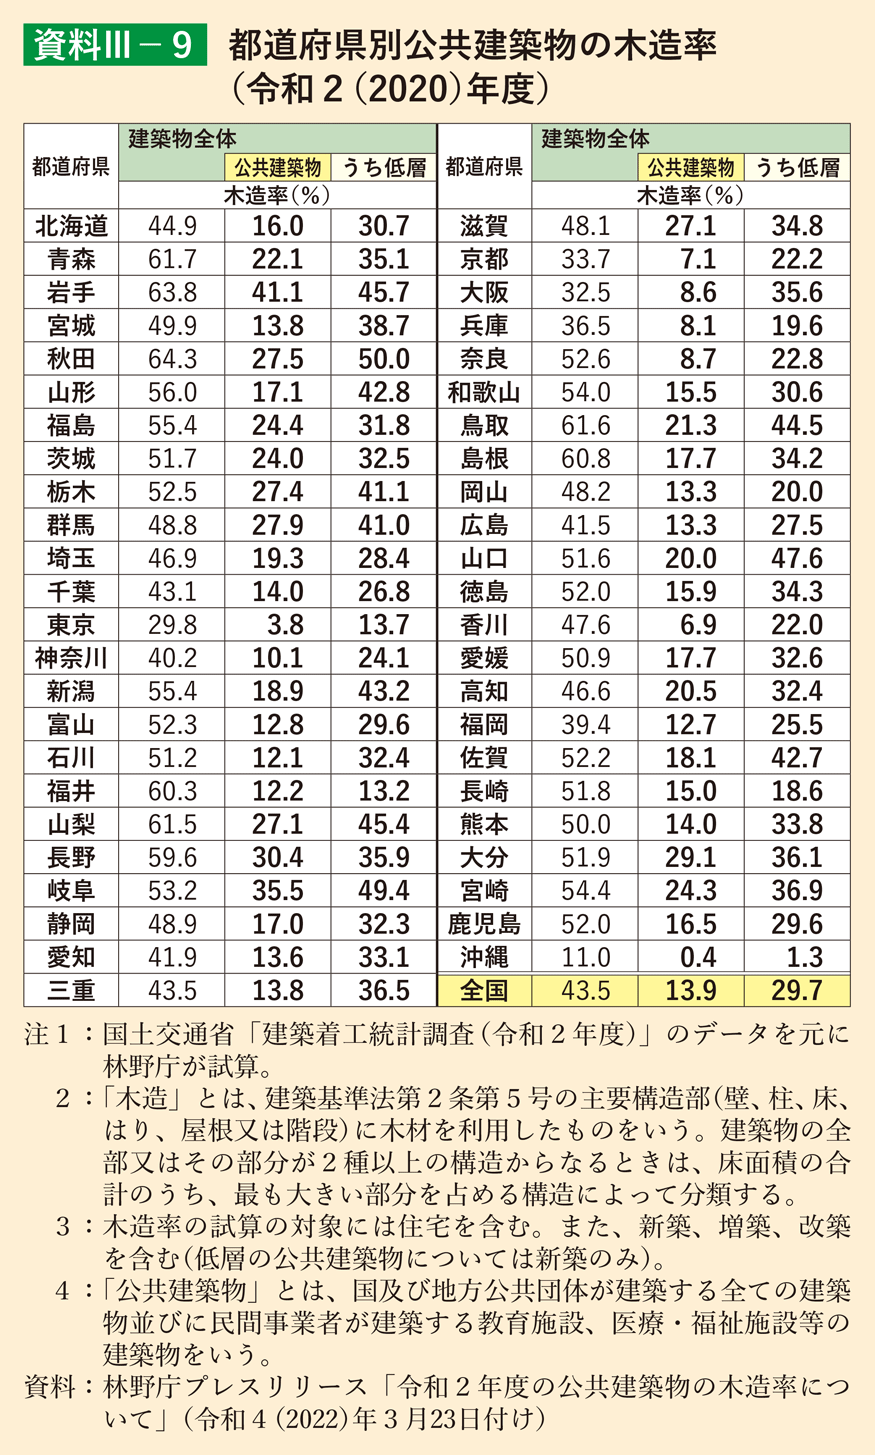 資料3-9 都道府県別公共建築物の木造率（令和2（2020）年度）